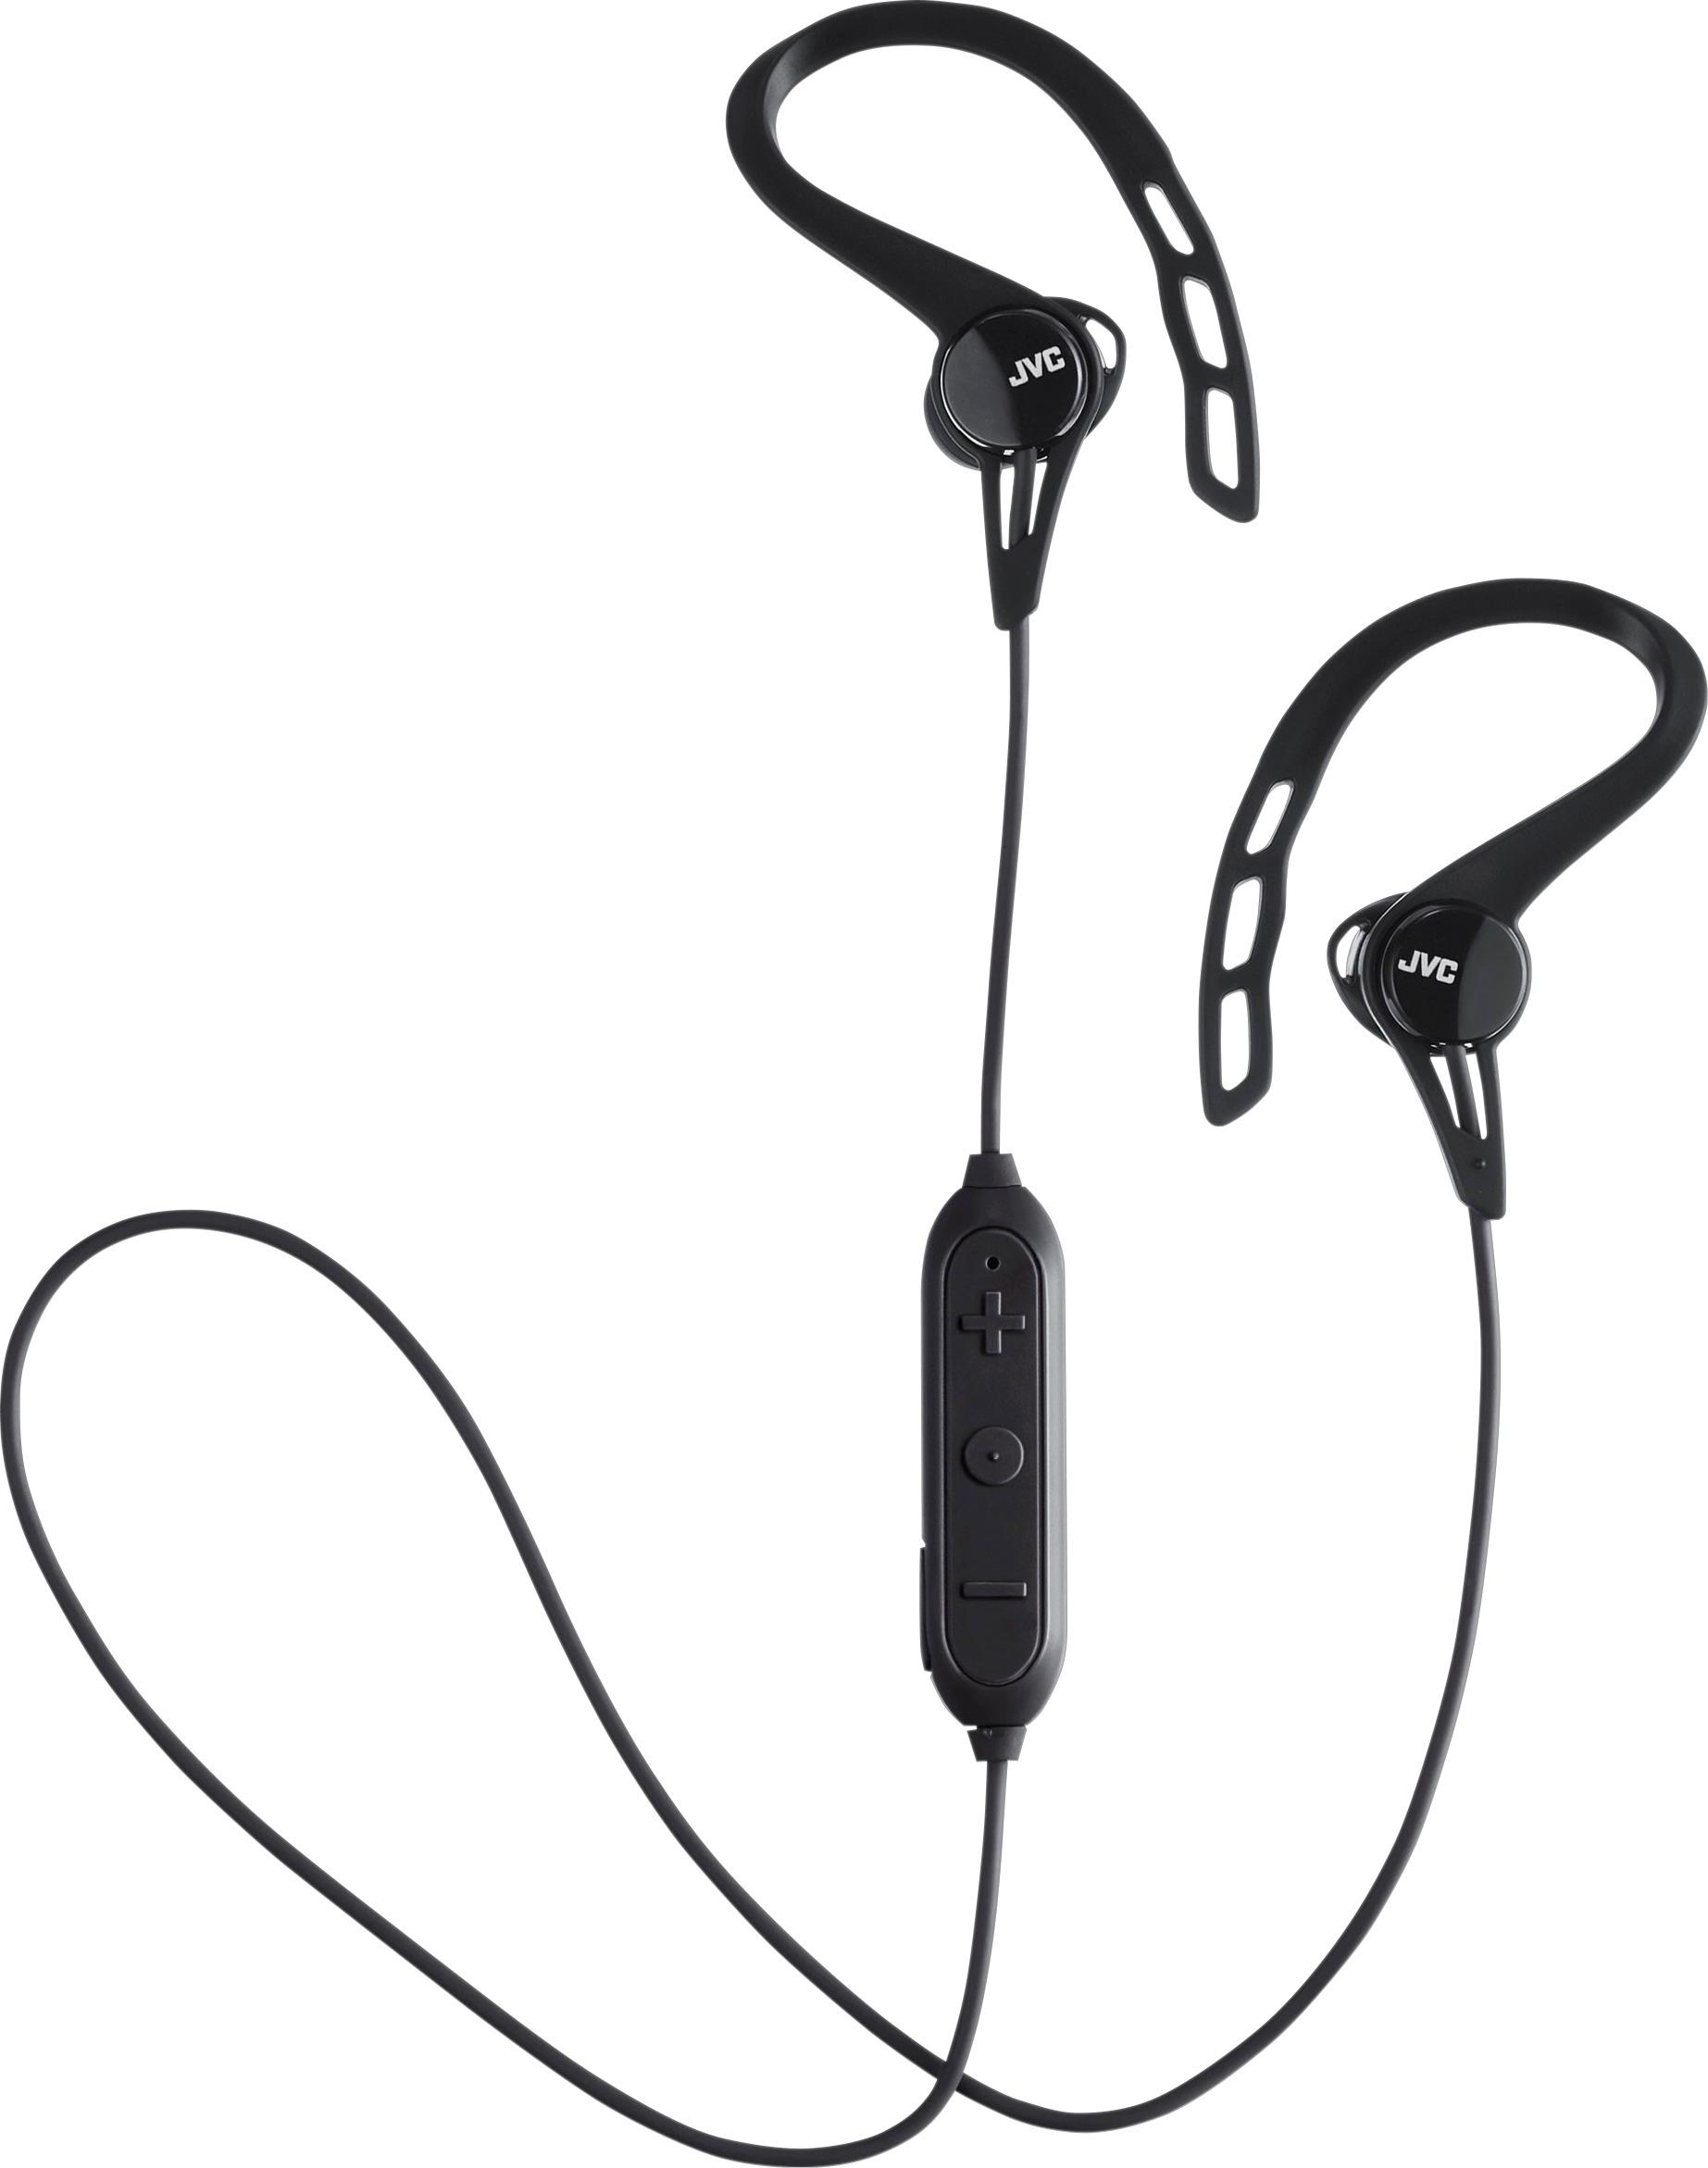 JVC - HA EC20BT Wireless In-Ear Headphones (iOS) - Black was $39.99 now $25.99 (35.0% off)